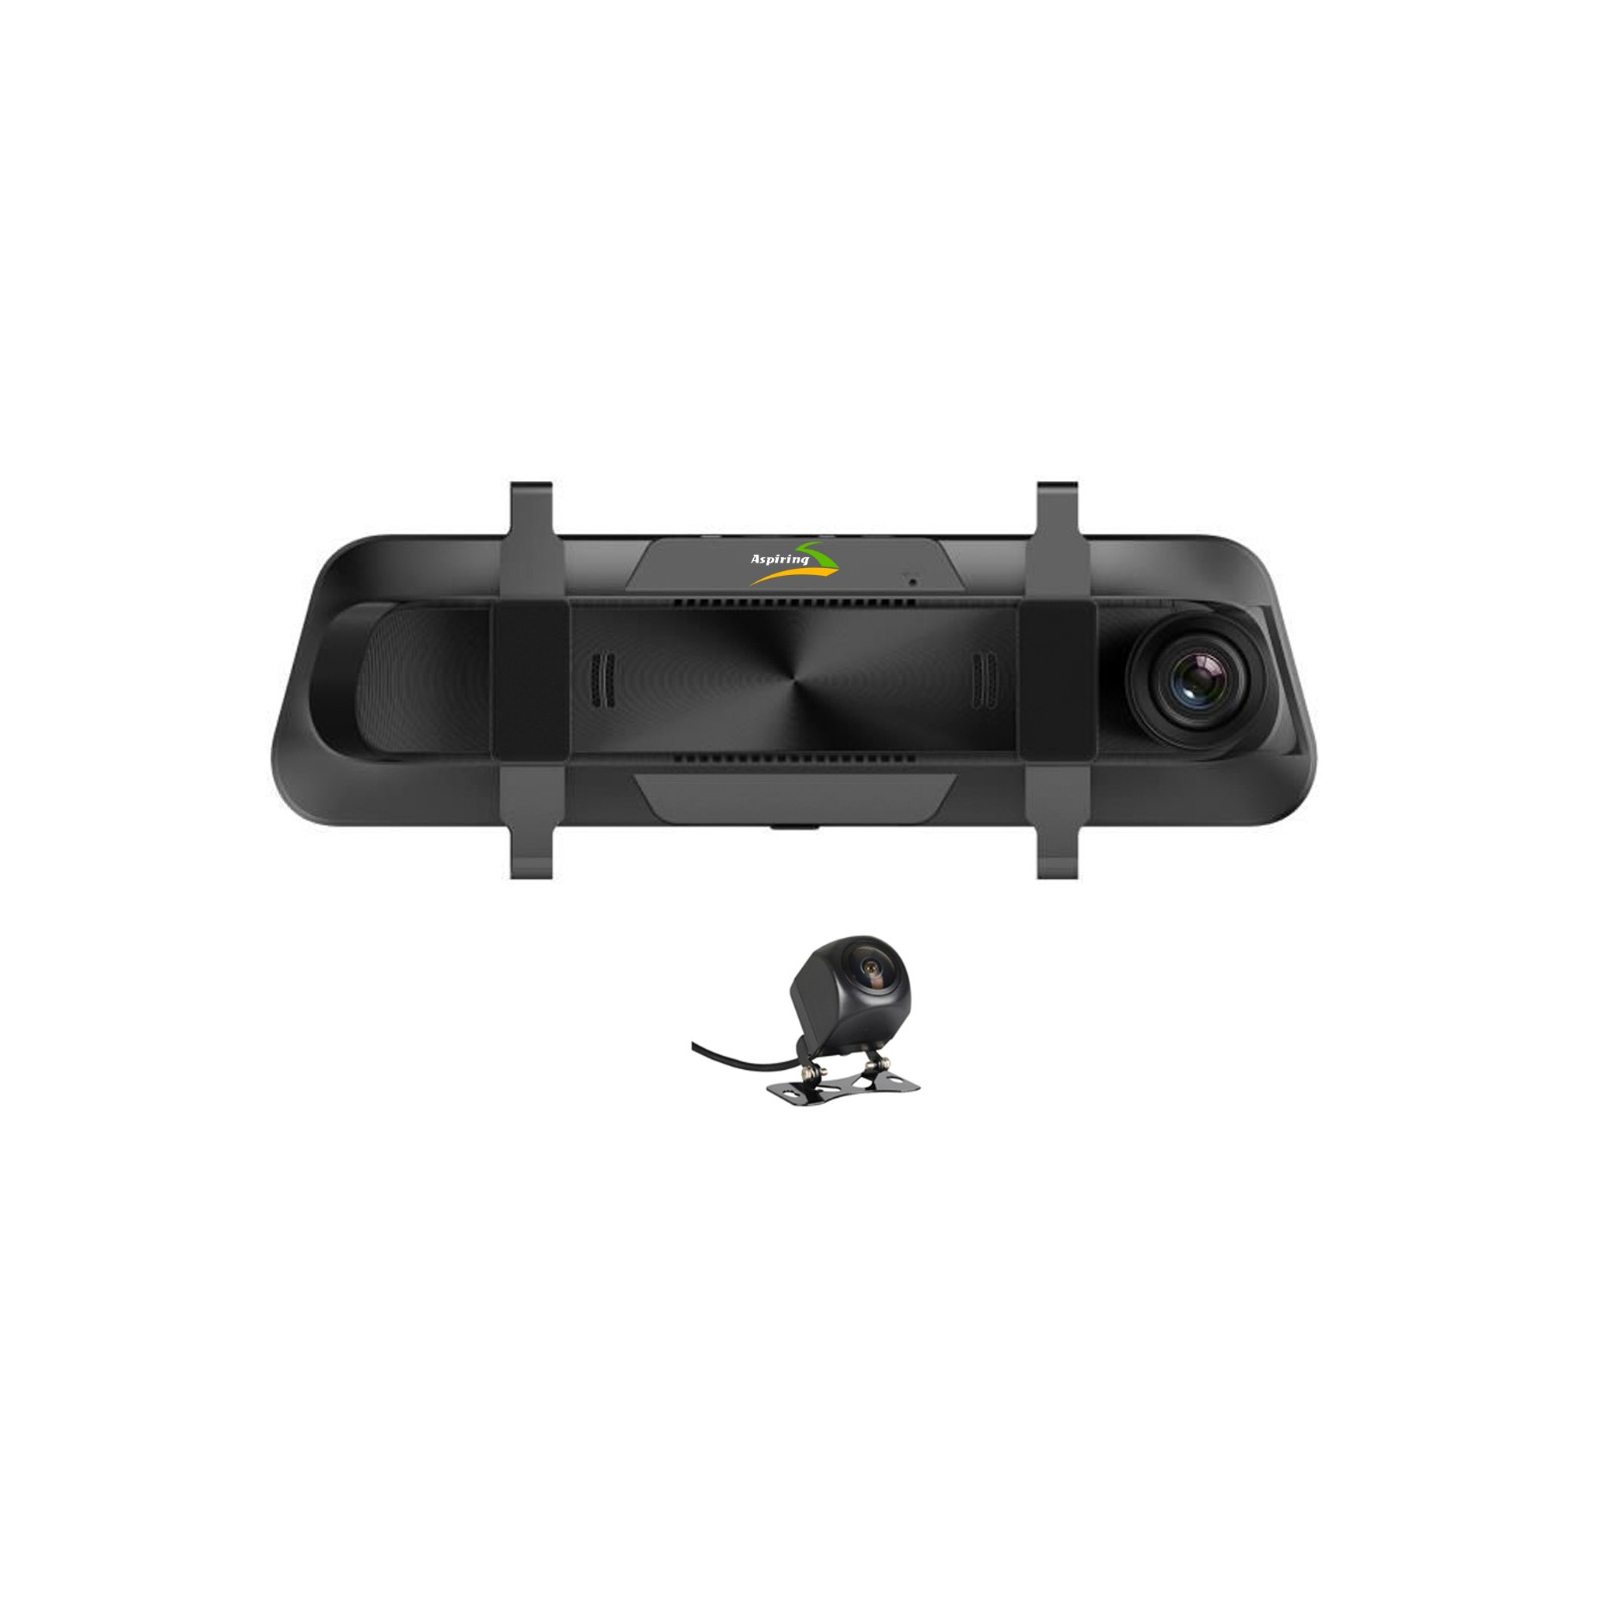 Відеореєстратор Aspiring Maxi 3 Speedcam, WI-FI, GPS, Dual (MAXI 3) зображення 3